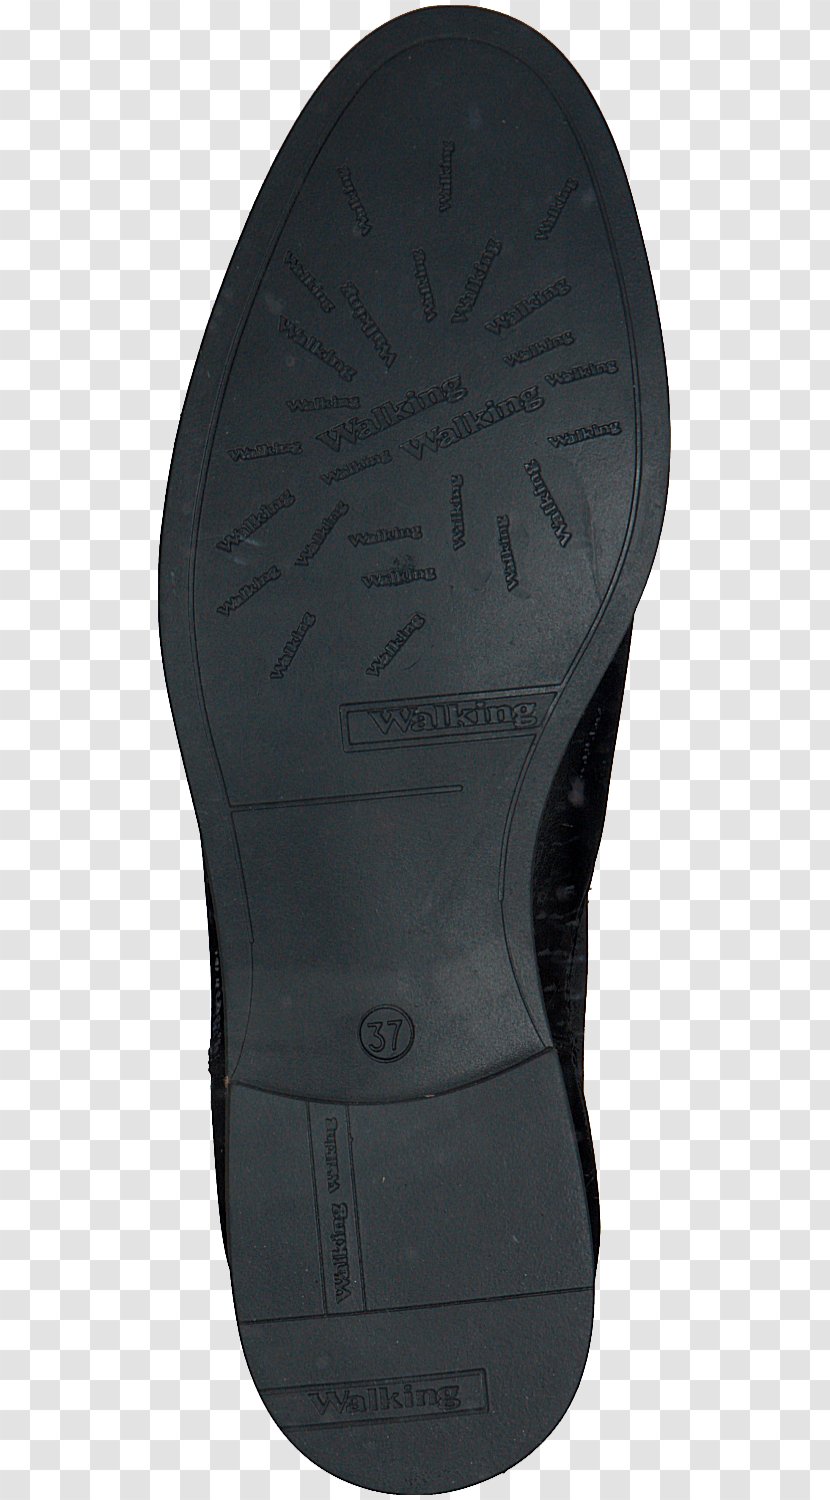 Walking Shoe - Design Transparent PNG